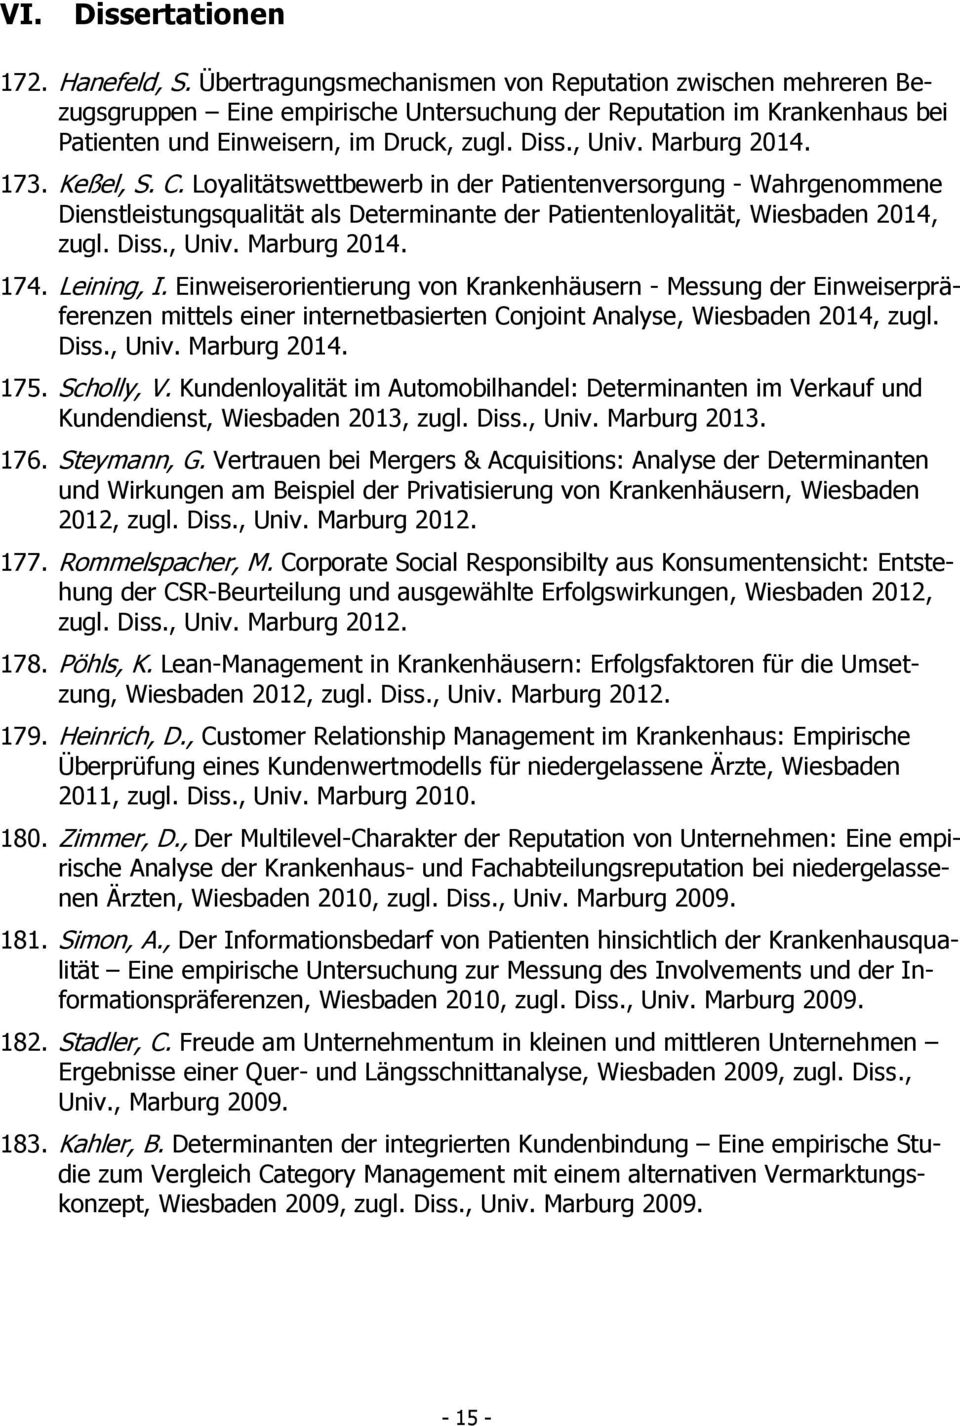 Marburg 2014. 173. Keßel, S. C. Loyalitätswettbewerb in der Patientenversorgung - Wahrgenommene Dienstleistungsqualität als Determinante der Patientenloyalität, Wiesbaden 2014, zugl. Diss., Univ.